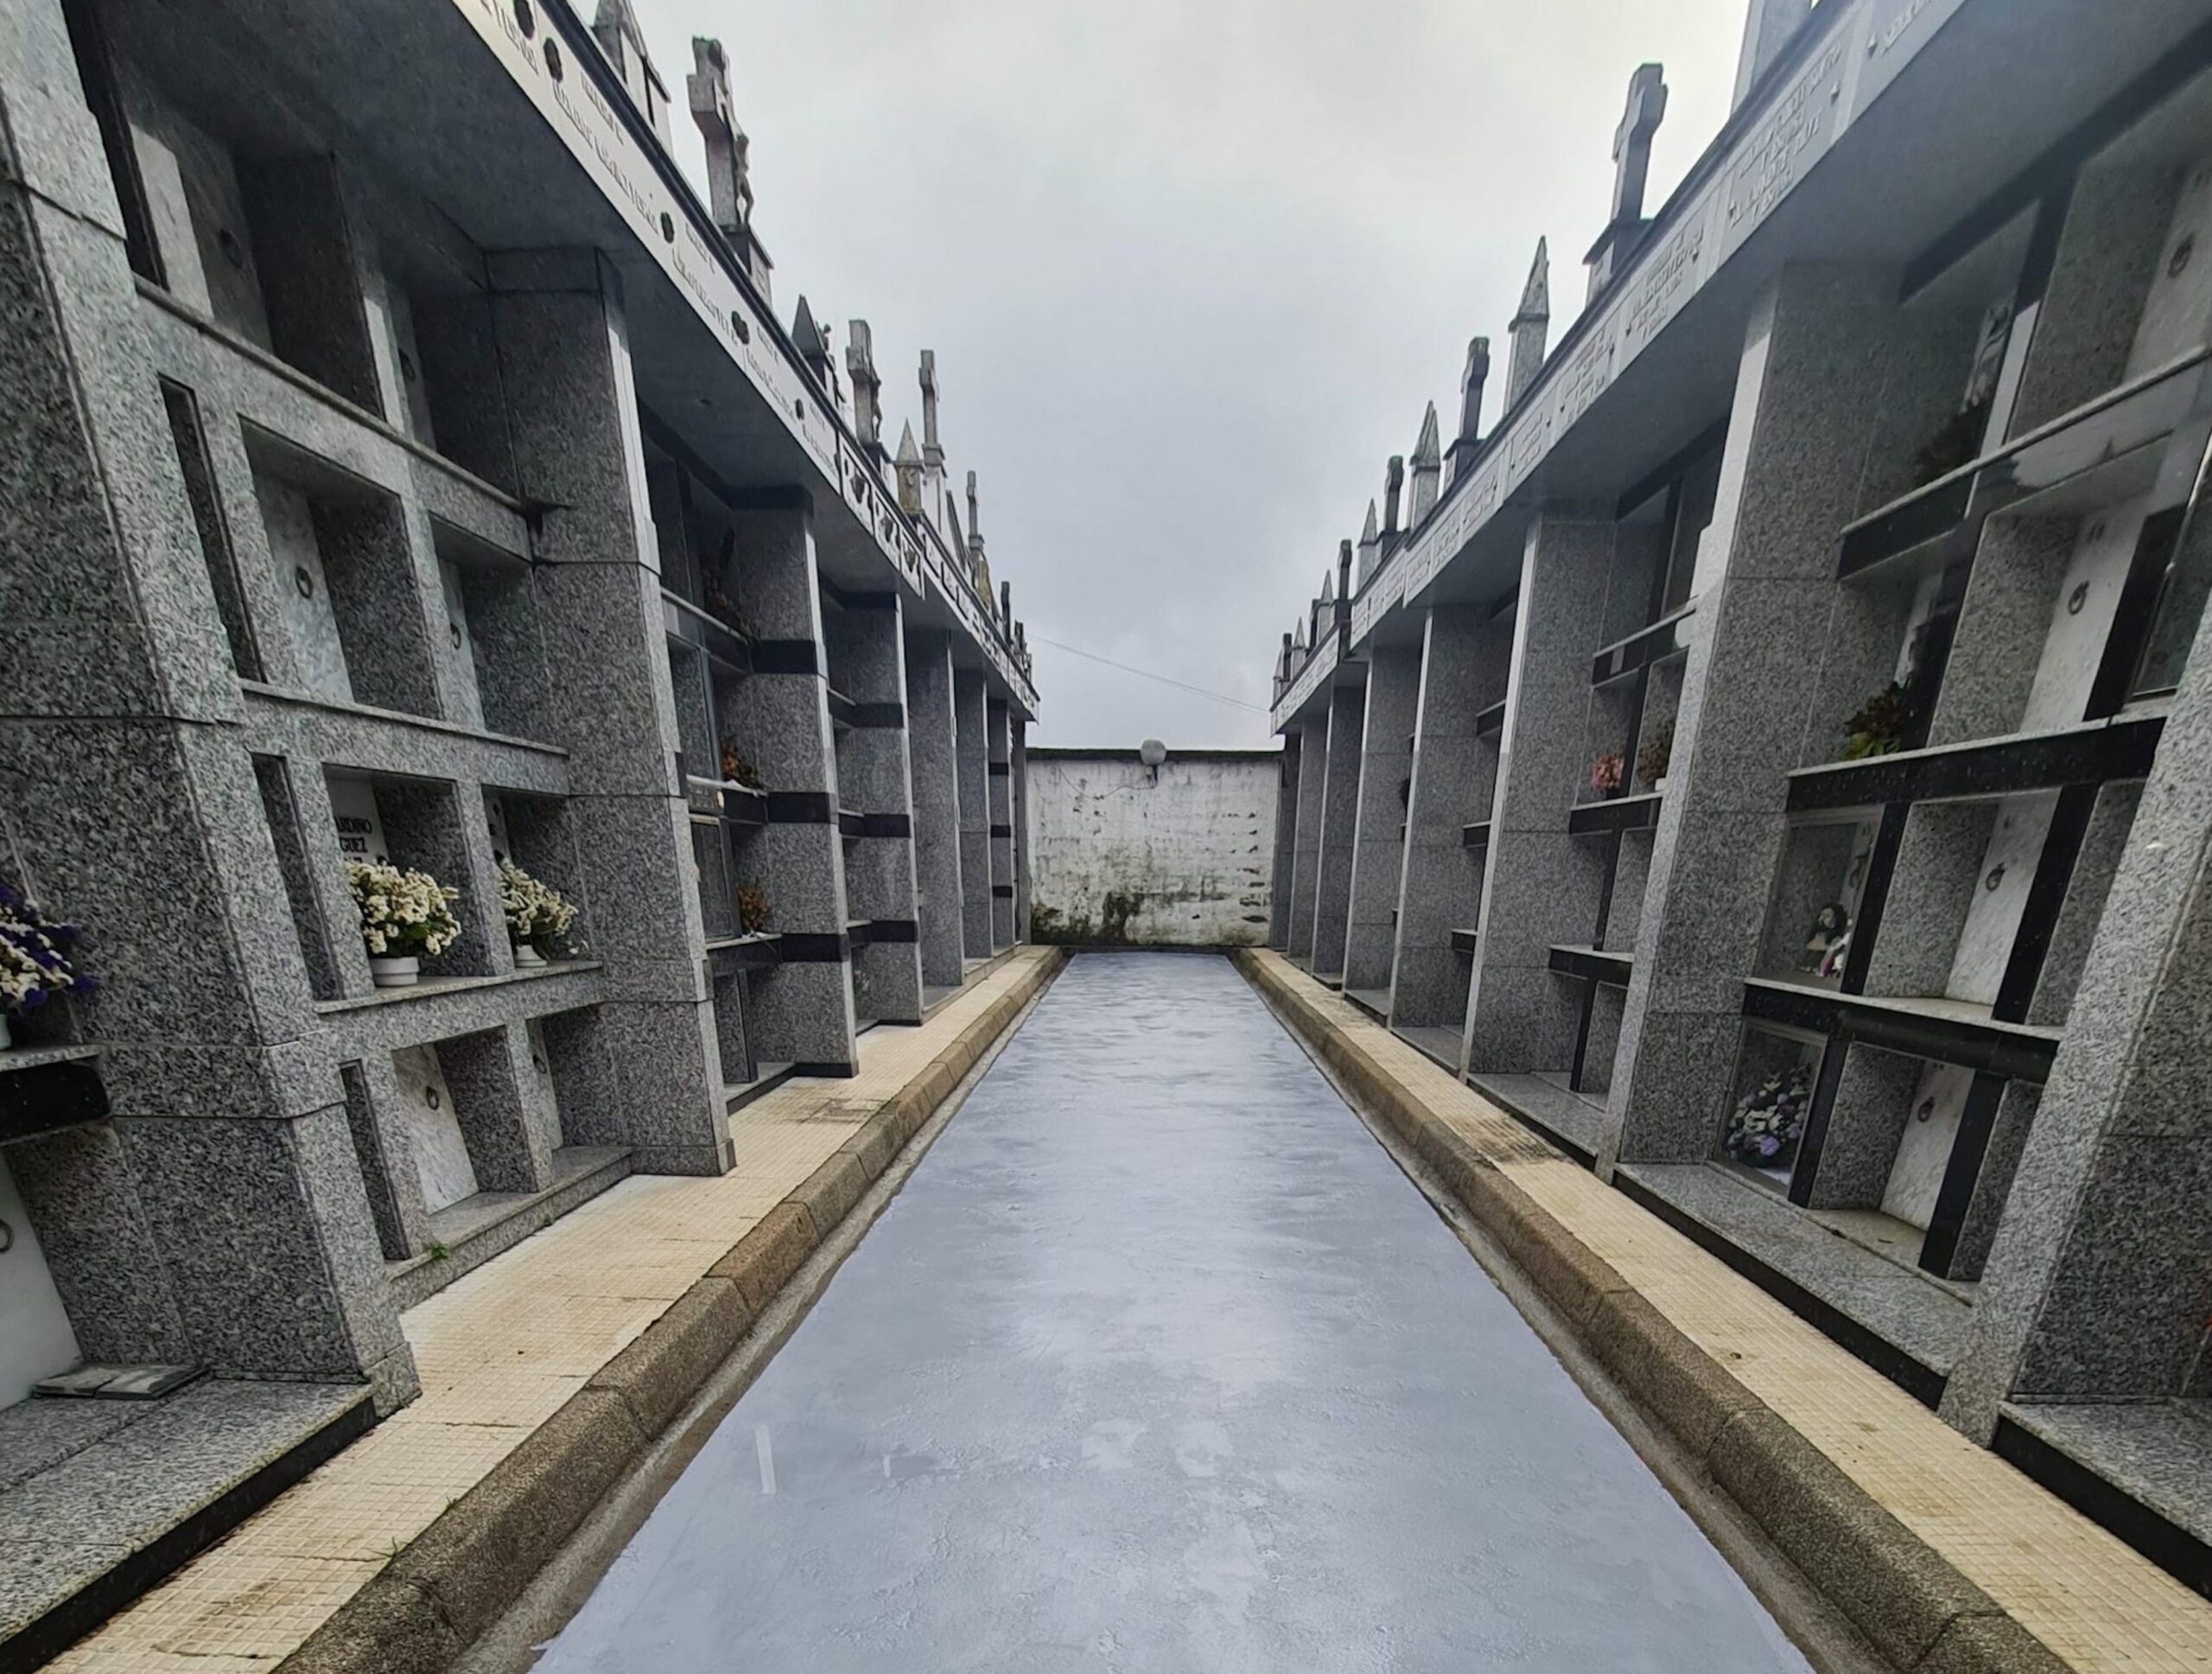 Pontevedra comenzará un plan para mejorar los cementerios municipales